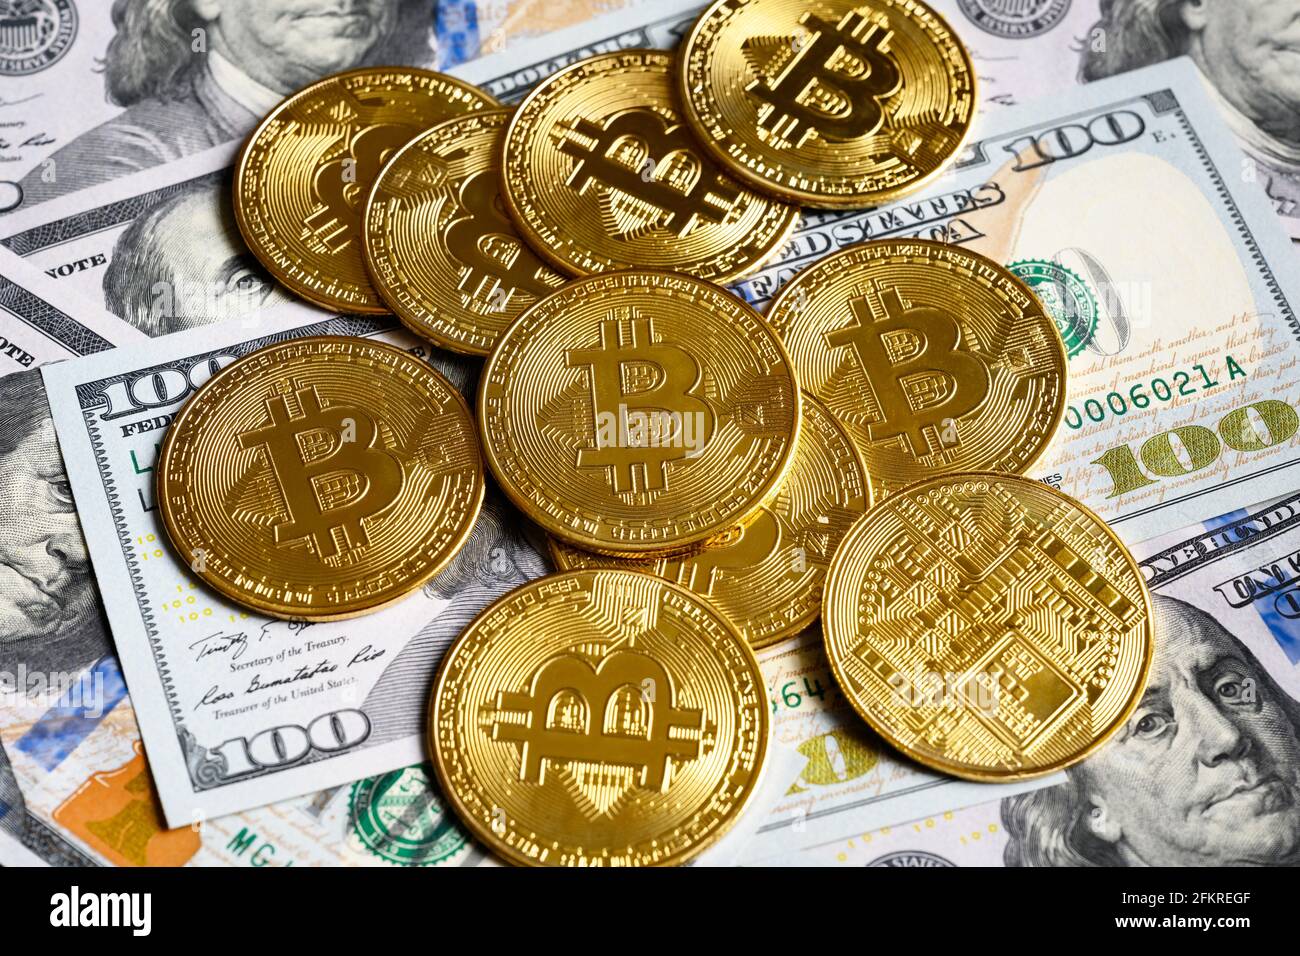 Bitcoin avec argent en dollars, crypto-monnaie virtuelle bitcoin (btc) et billets. Pièces de monnaie en or sur la pile de billets en dollars américains. Concept de paiement bitcoin, DIG Banque D'Images